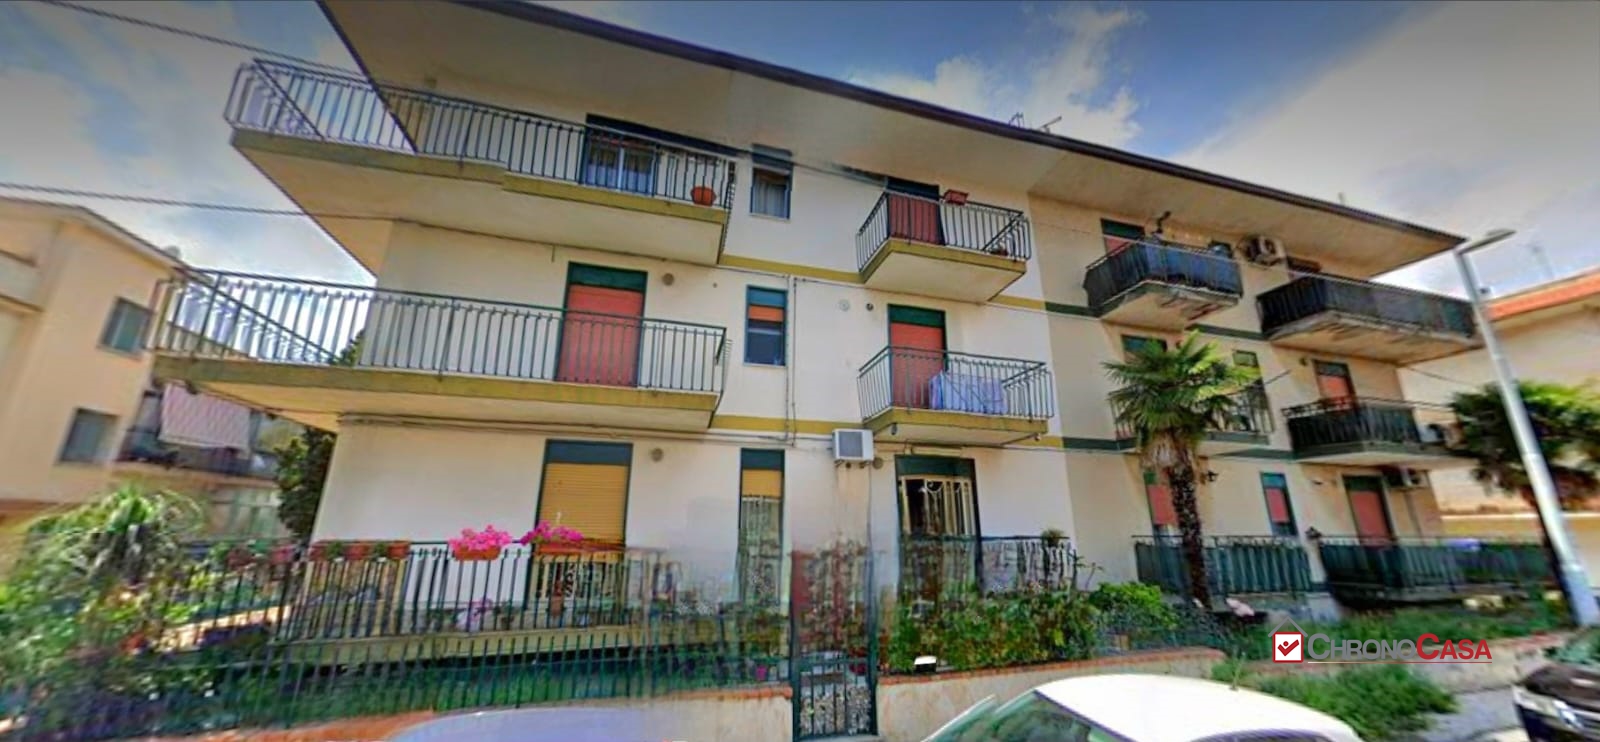 Appartamento in vendita a Mascali, 3 locali, prezzo € 77.000 | PortaleAgenzieImmobiliari.it